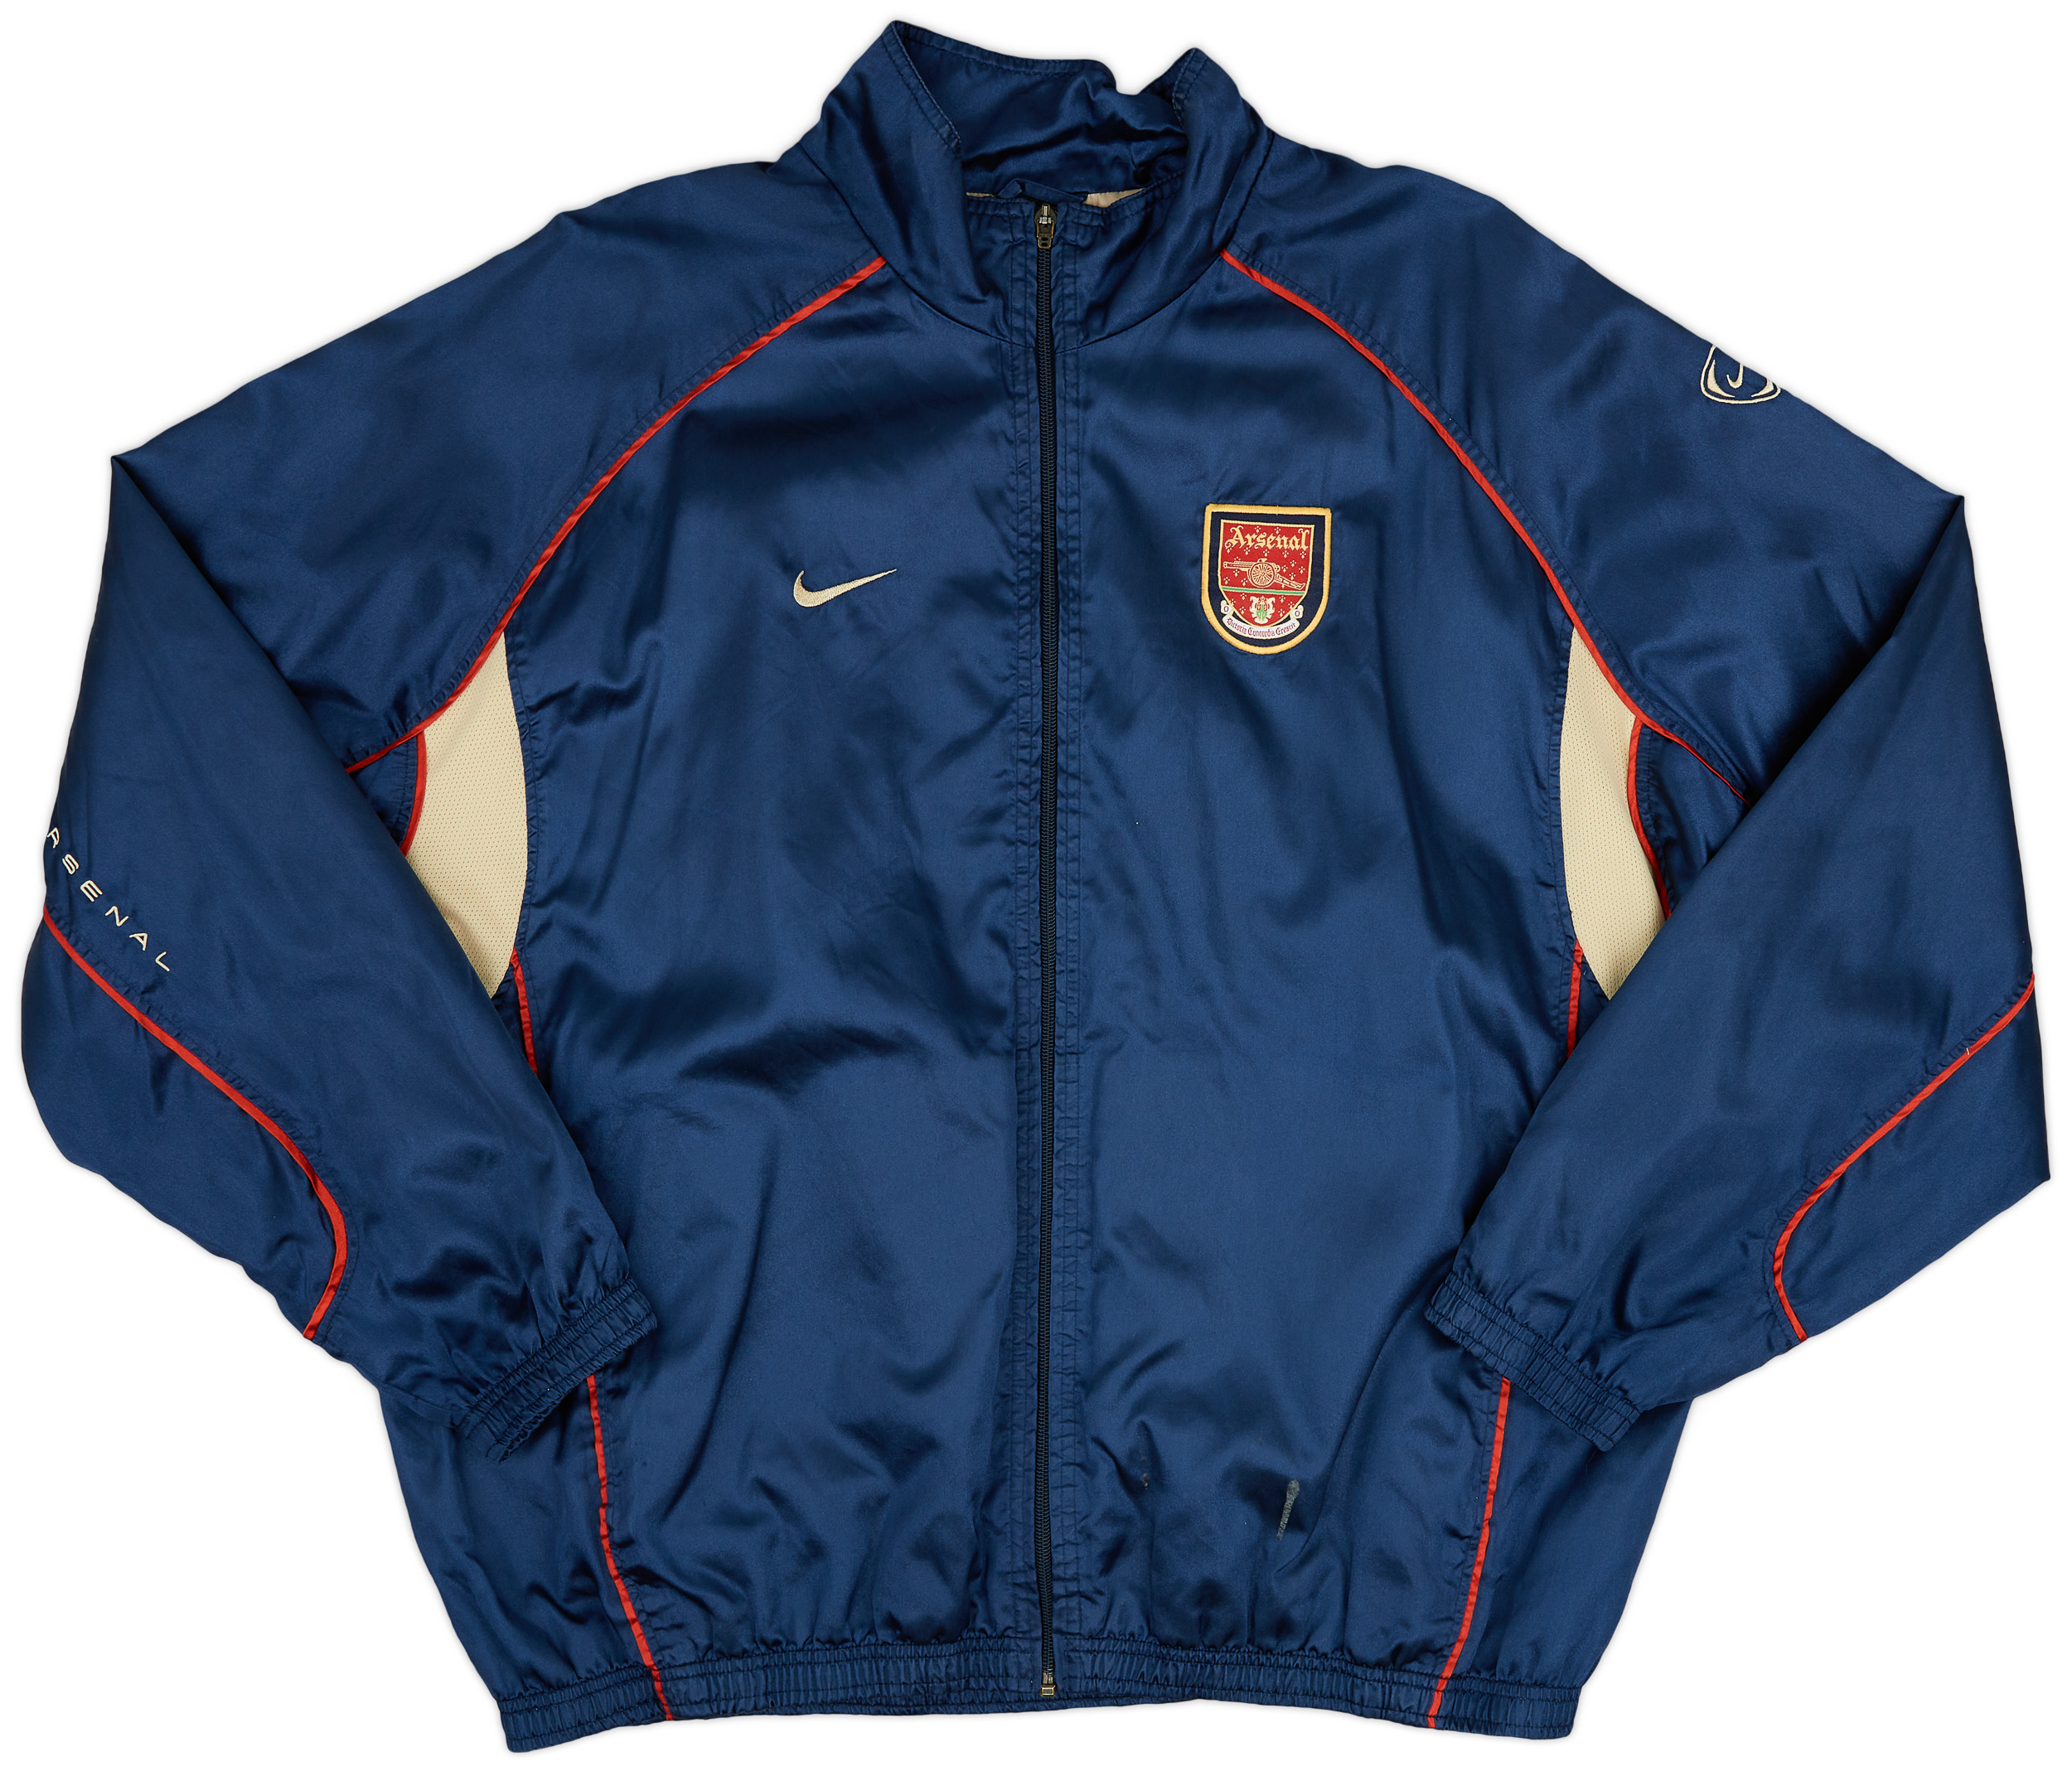 2001-02 Arsenal Nike Track Jacket - 9/10 - (XL)